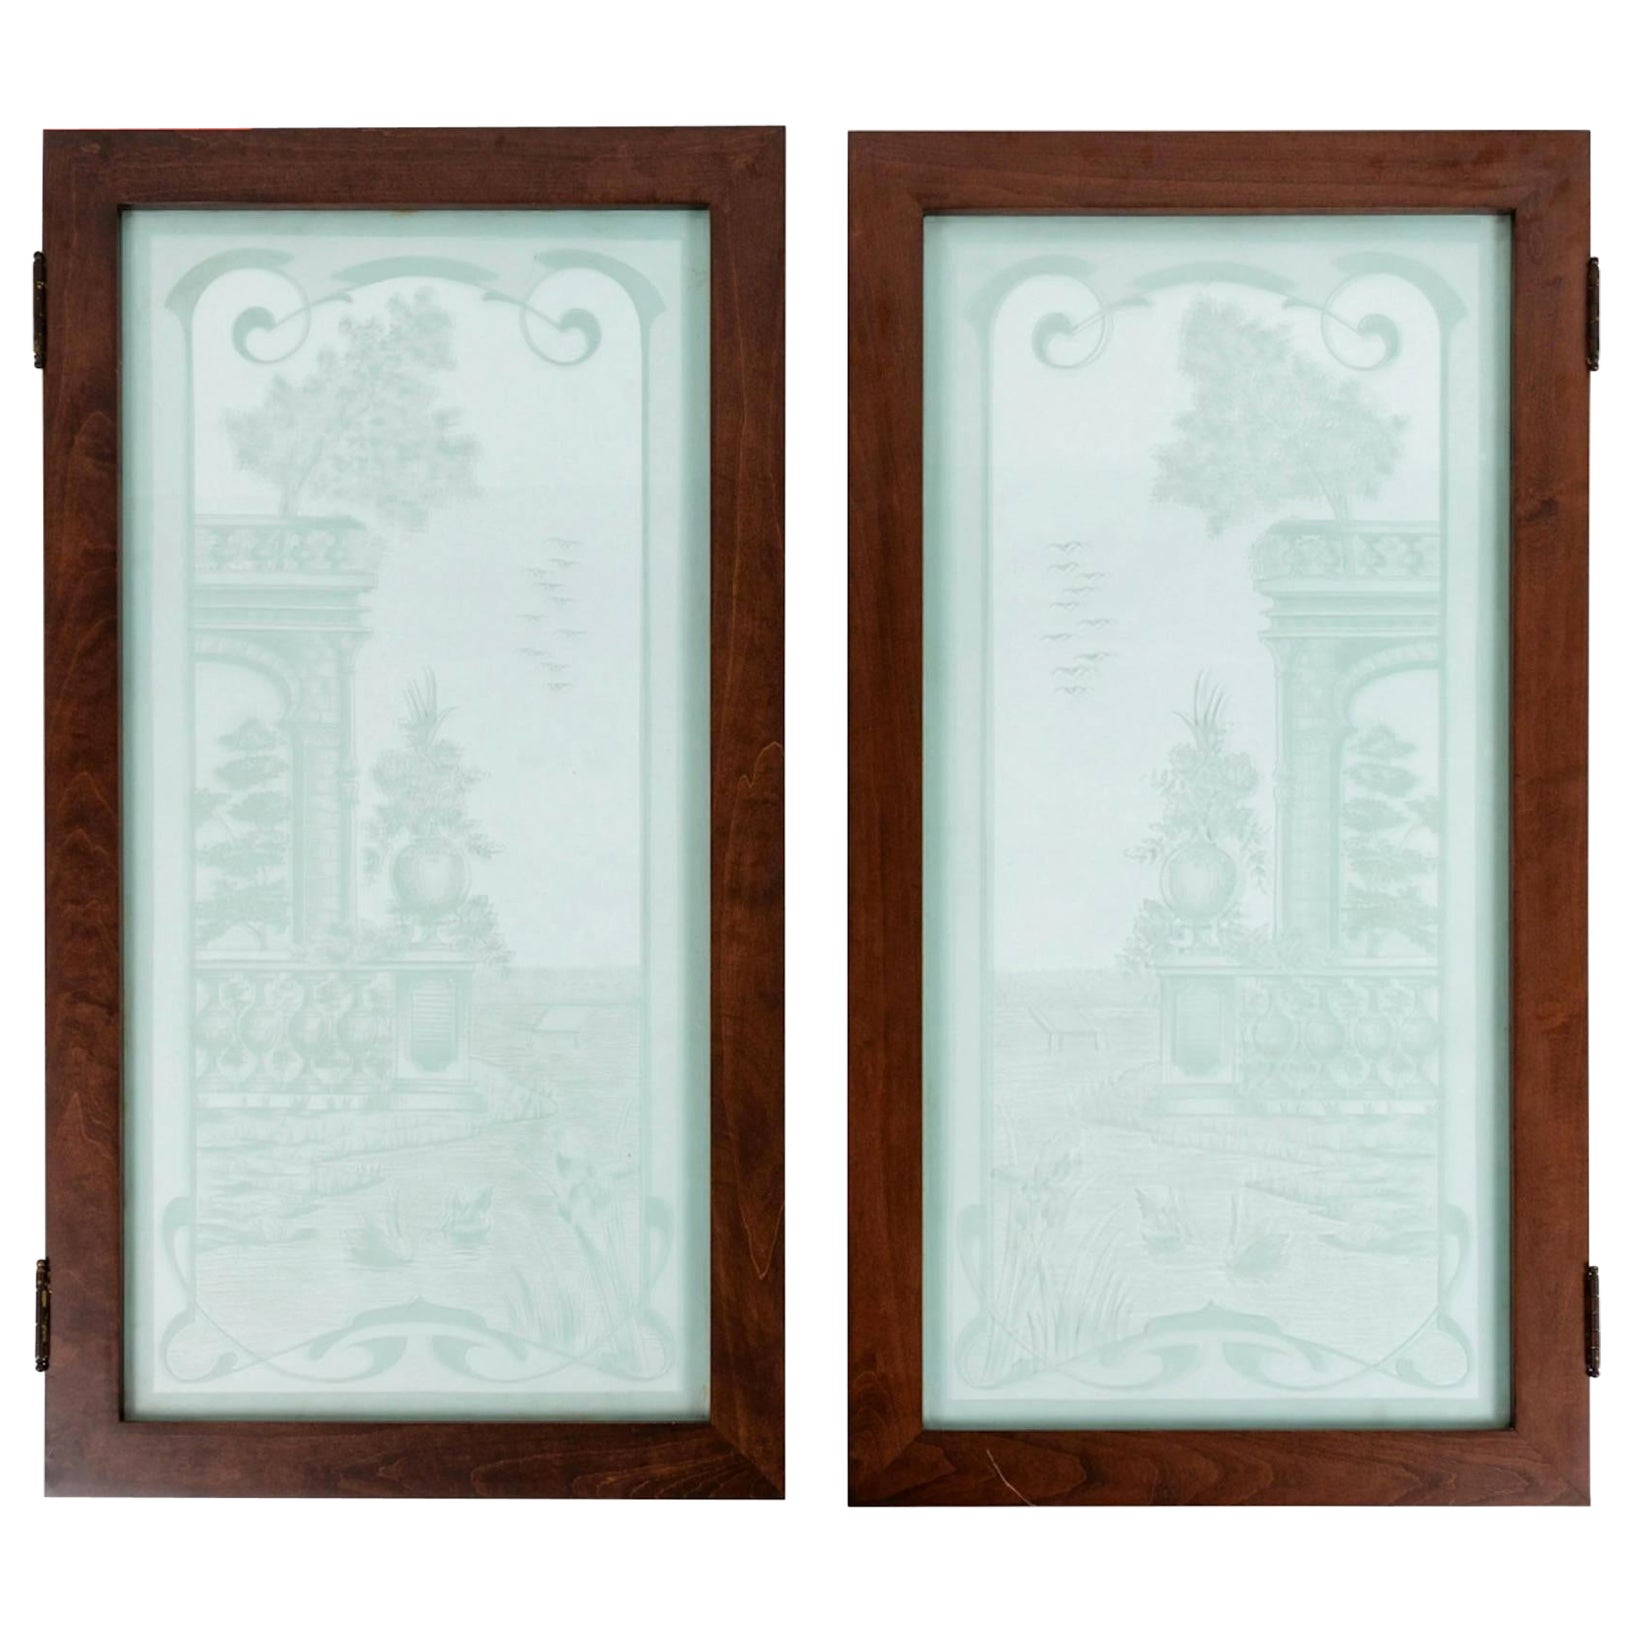 Paire de fenêtres en verre gravé de style Art nouveau du 19ème siècle représentant des cygnes.